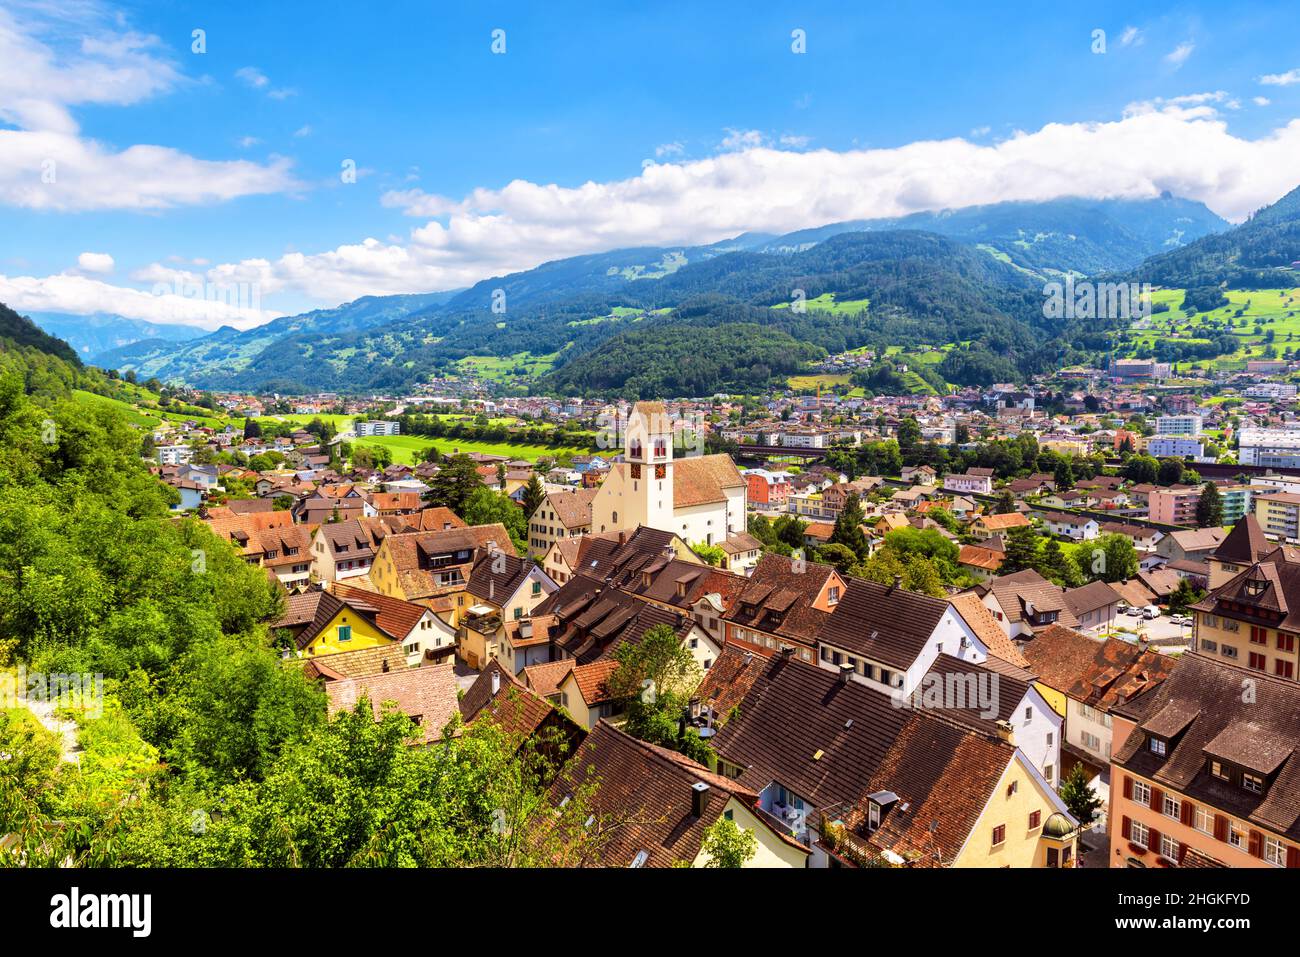 Landschaft mit Bergen und Stadt, Schweiz. Panorama der Alpenstadt im grünen Tal, landschaftlich reizvolle Aussicht auf Schweizer Gelände. Landschaft von Häusern und Gebäuden Stockfoto